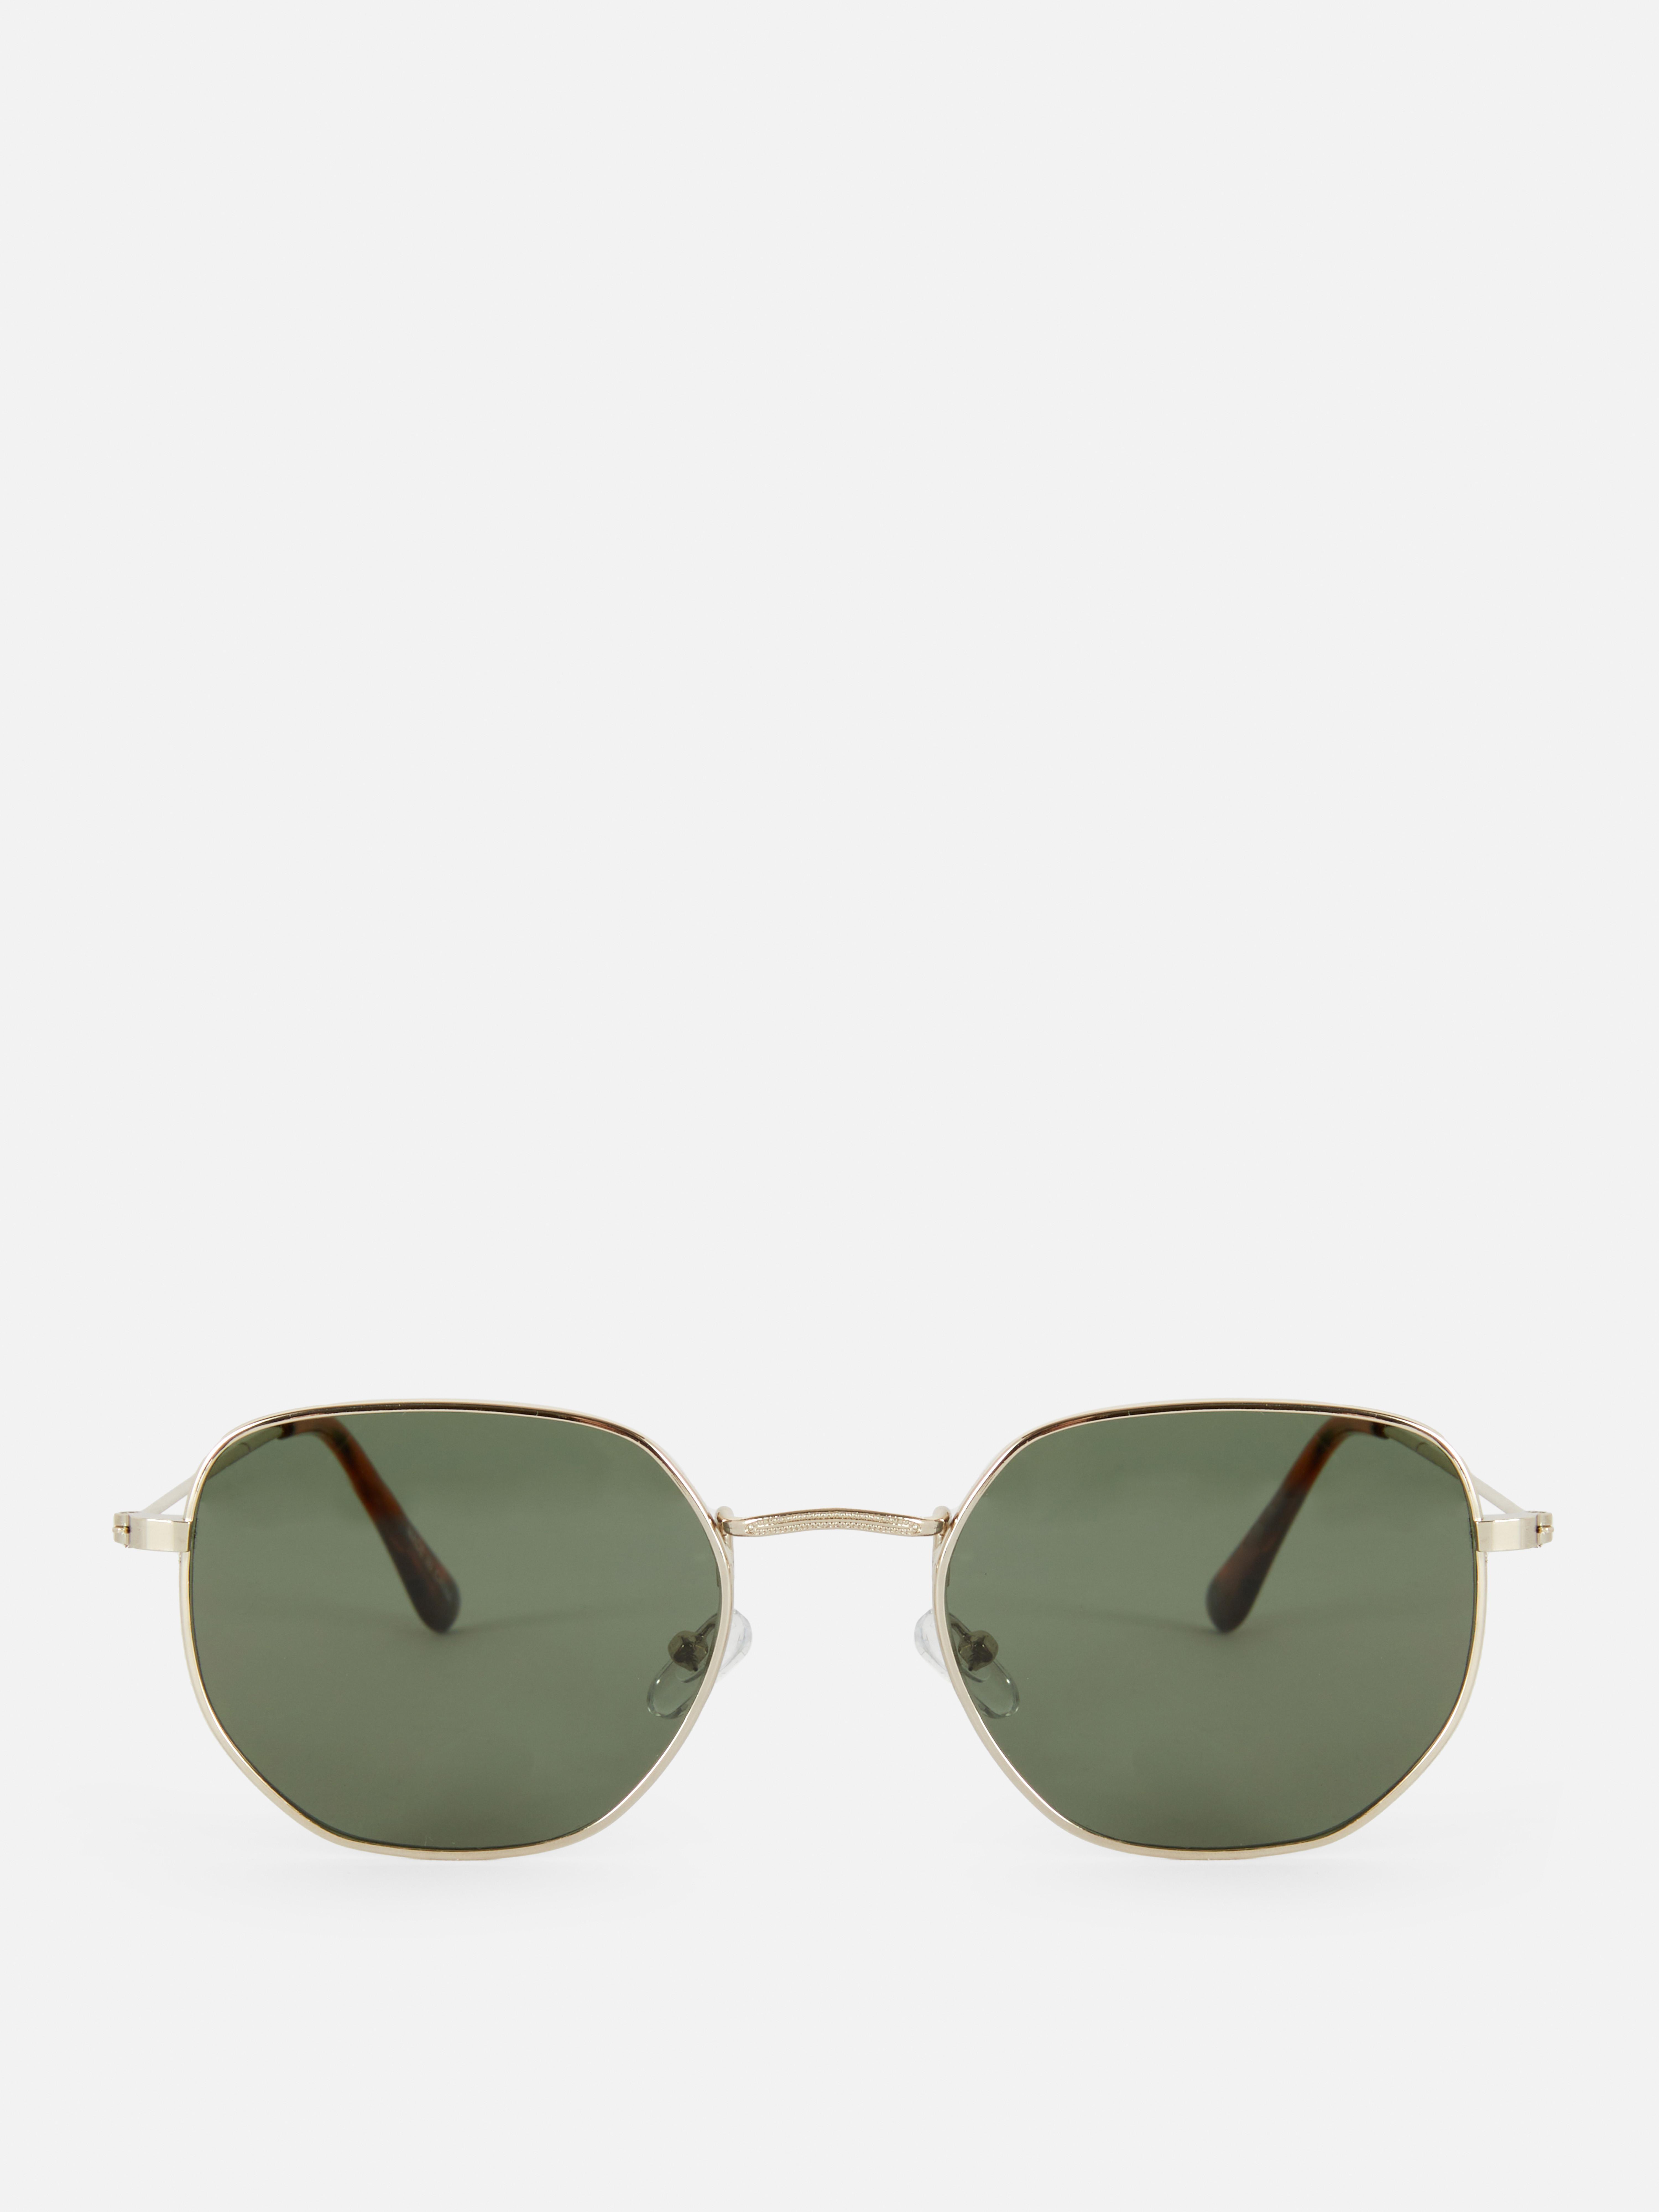 Šestihranné sluneční brýle s kovovými obroučkami